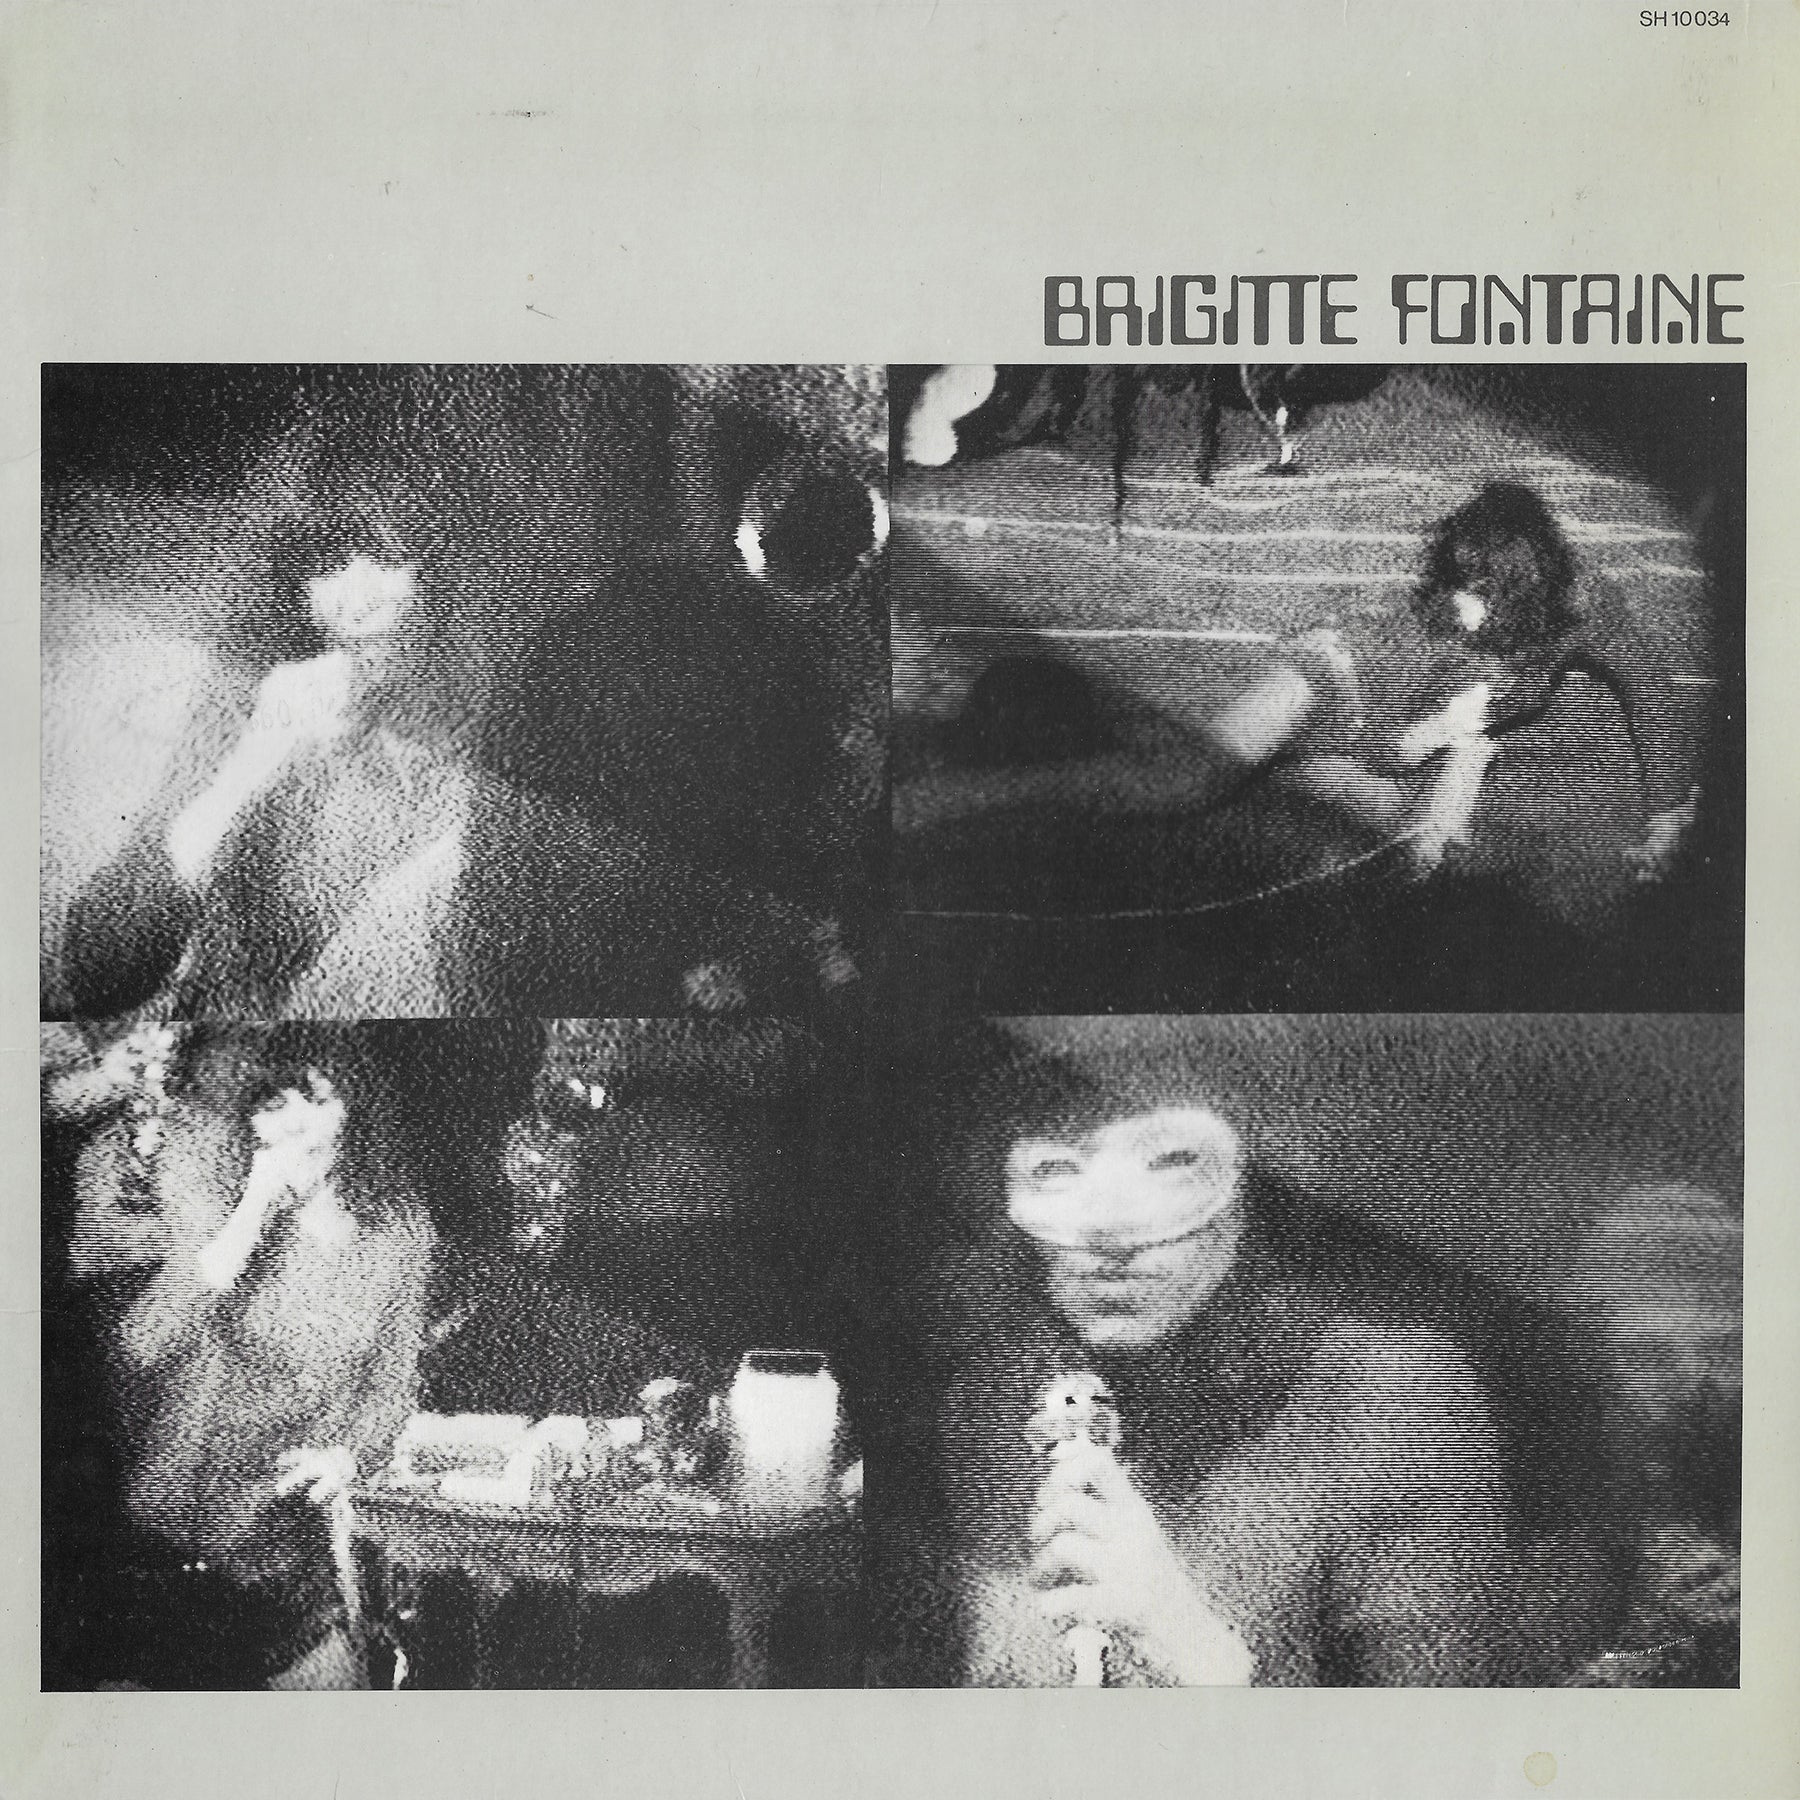 Brigitte Fontaine - Brigitte Fontaine